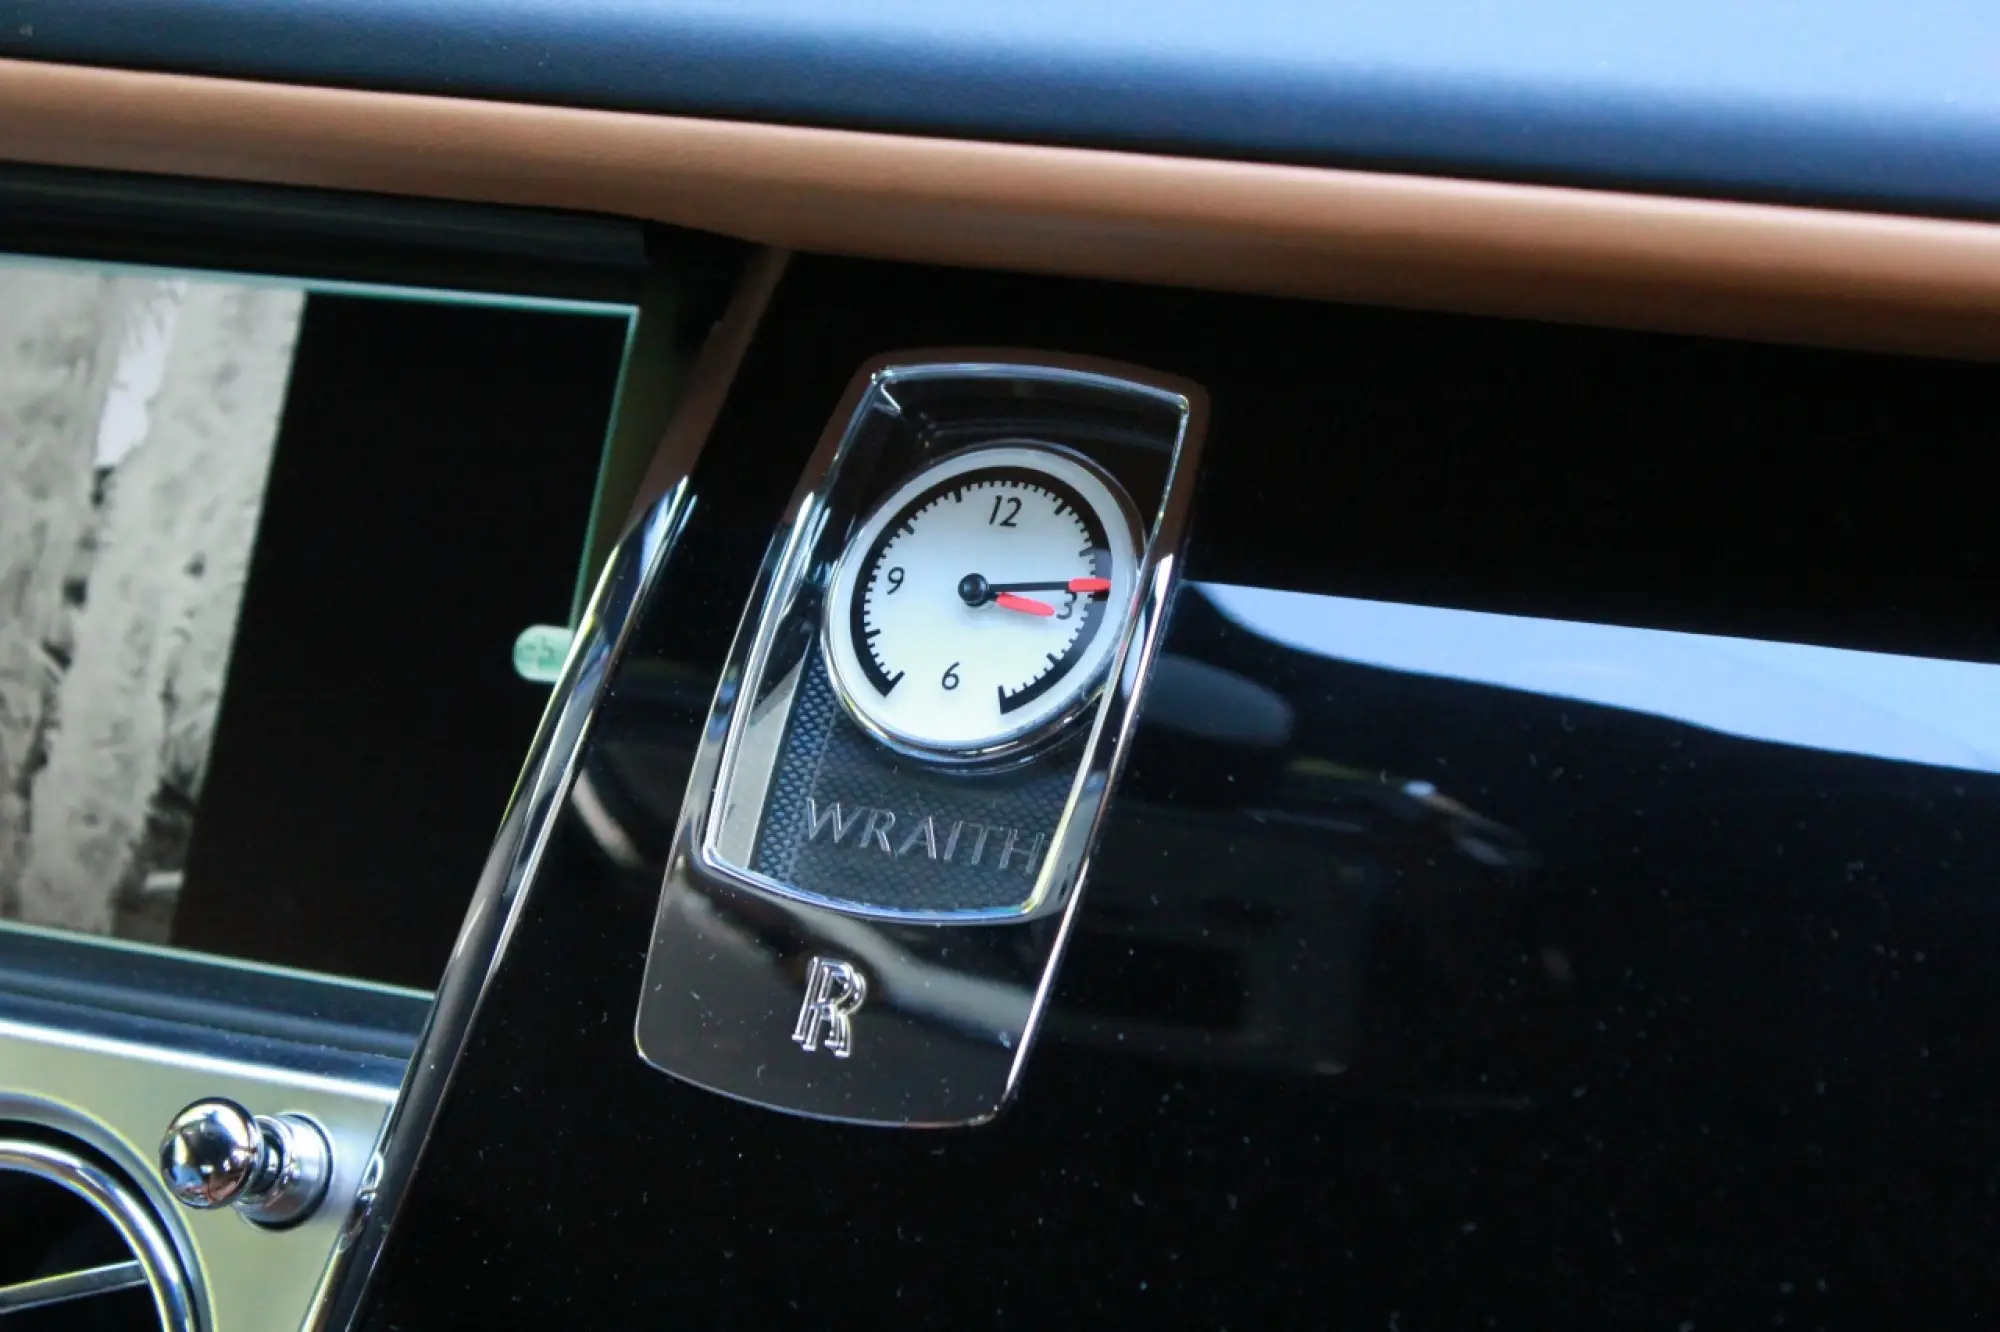 Rolls Royce Wraith - Test Drive 2014 - 263